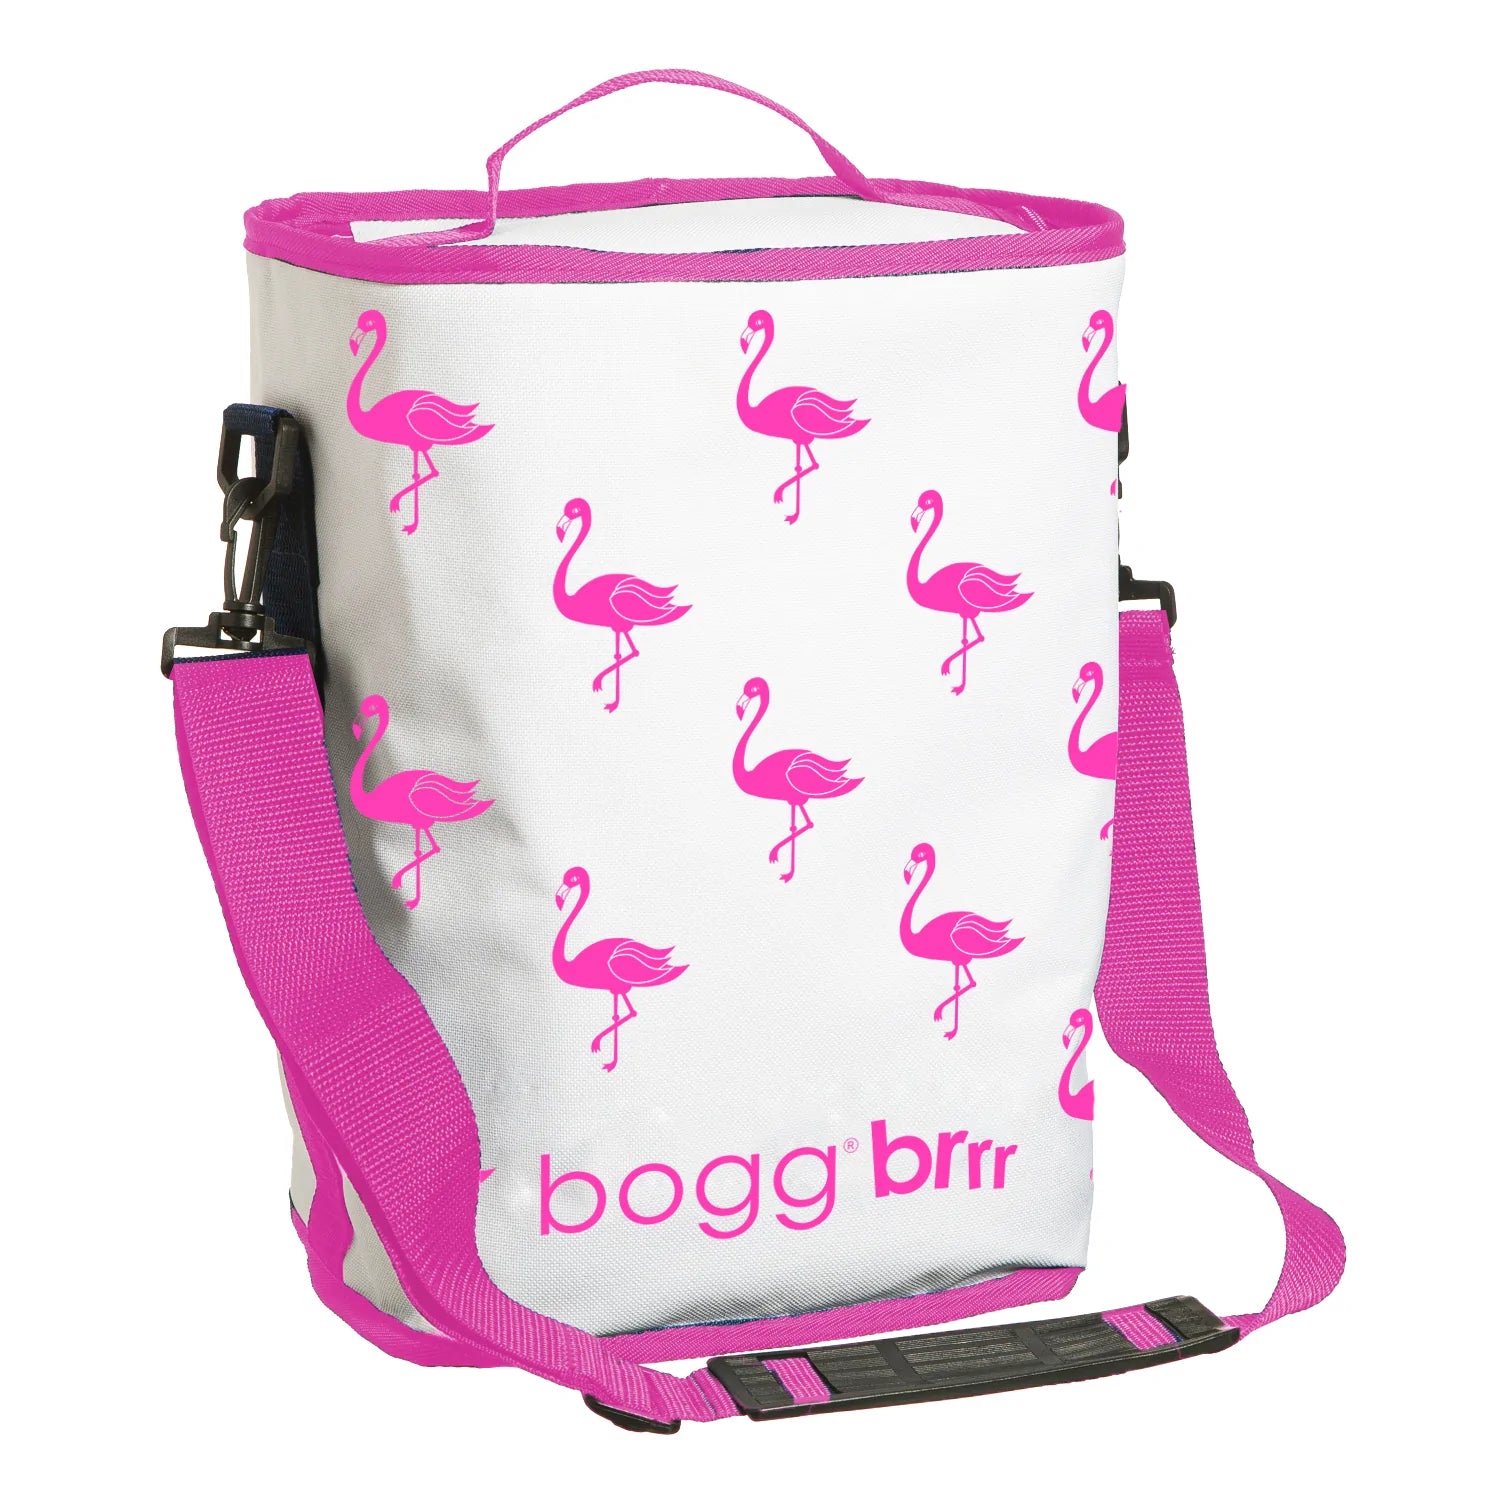 Bogg Bags Original – Baby Go Round, Inc.